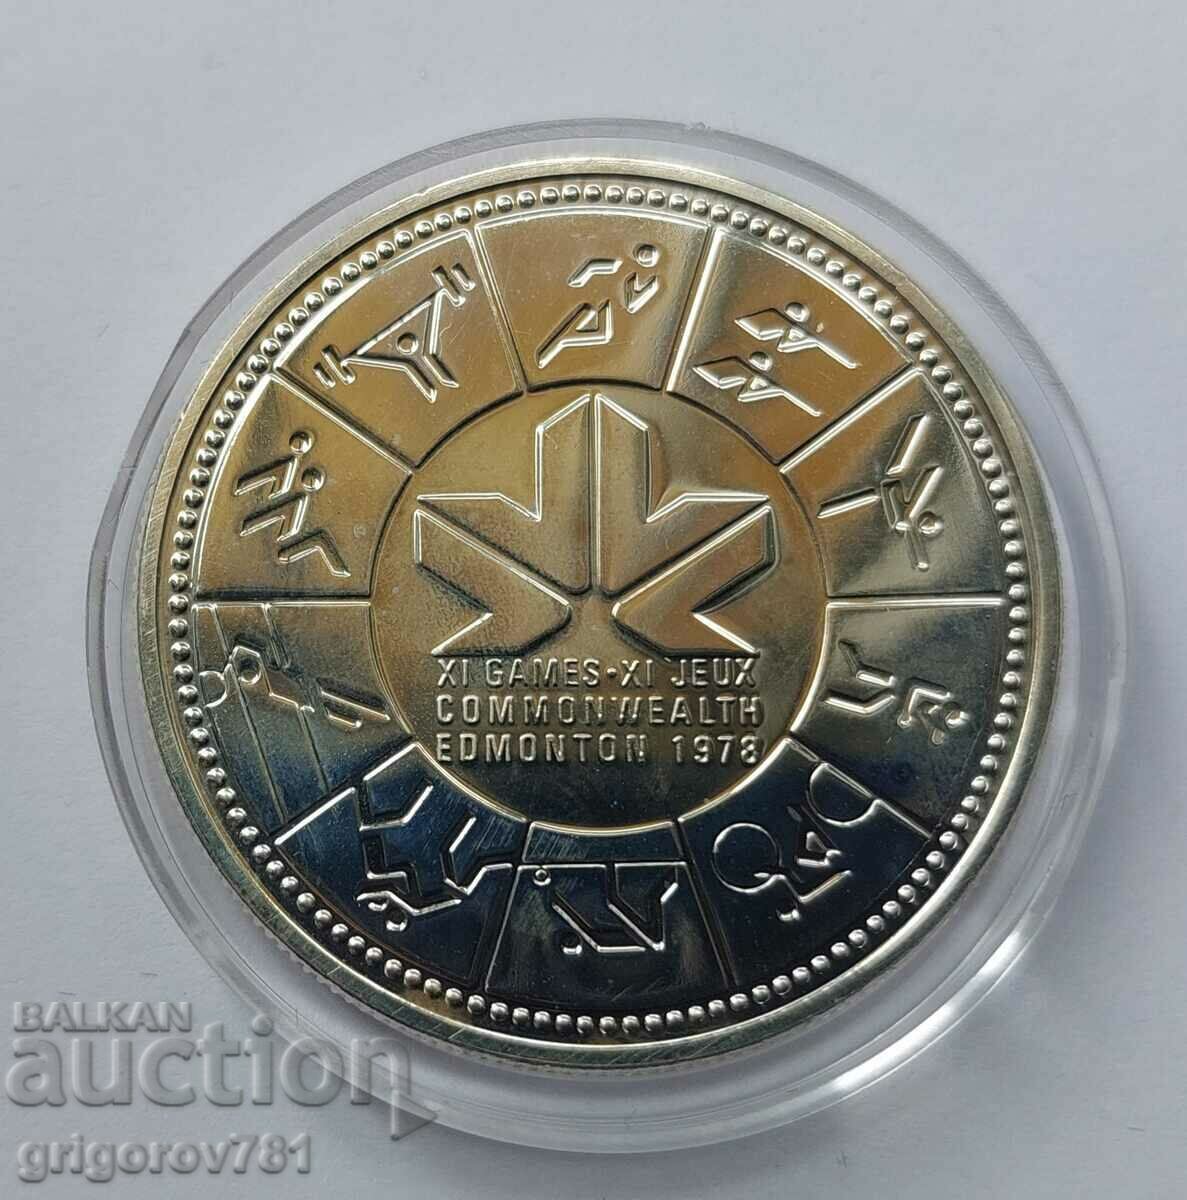 Ασημένιο 1 δολάριο Καναδάς 1978 - ασημένιο νόμισμα